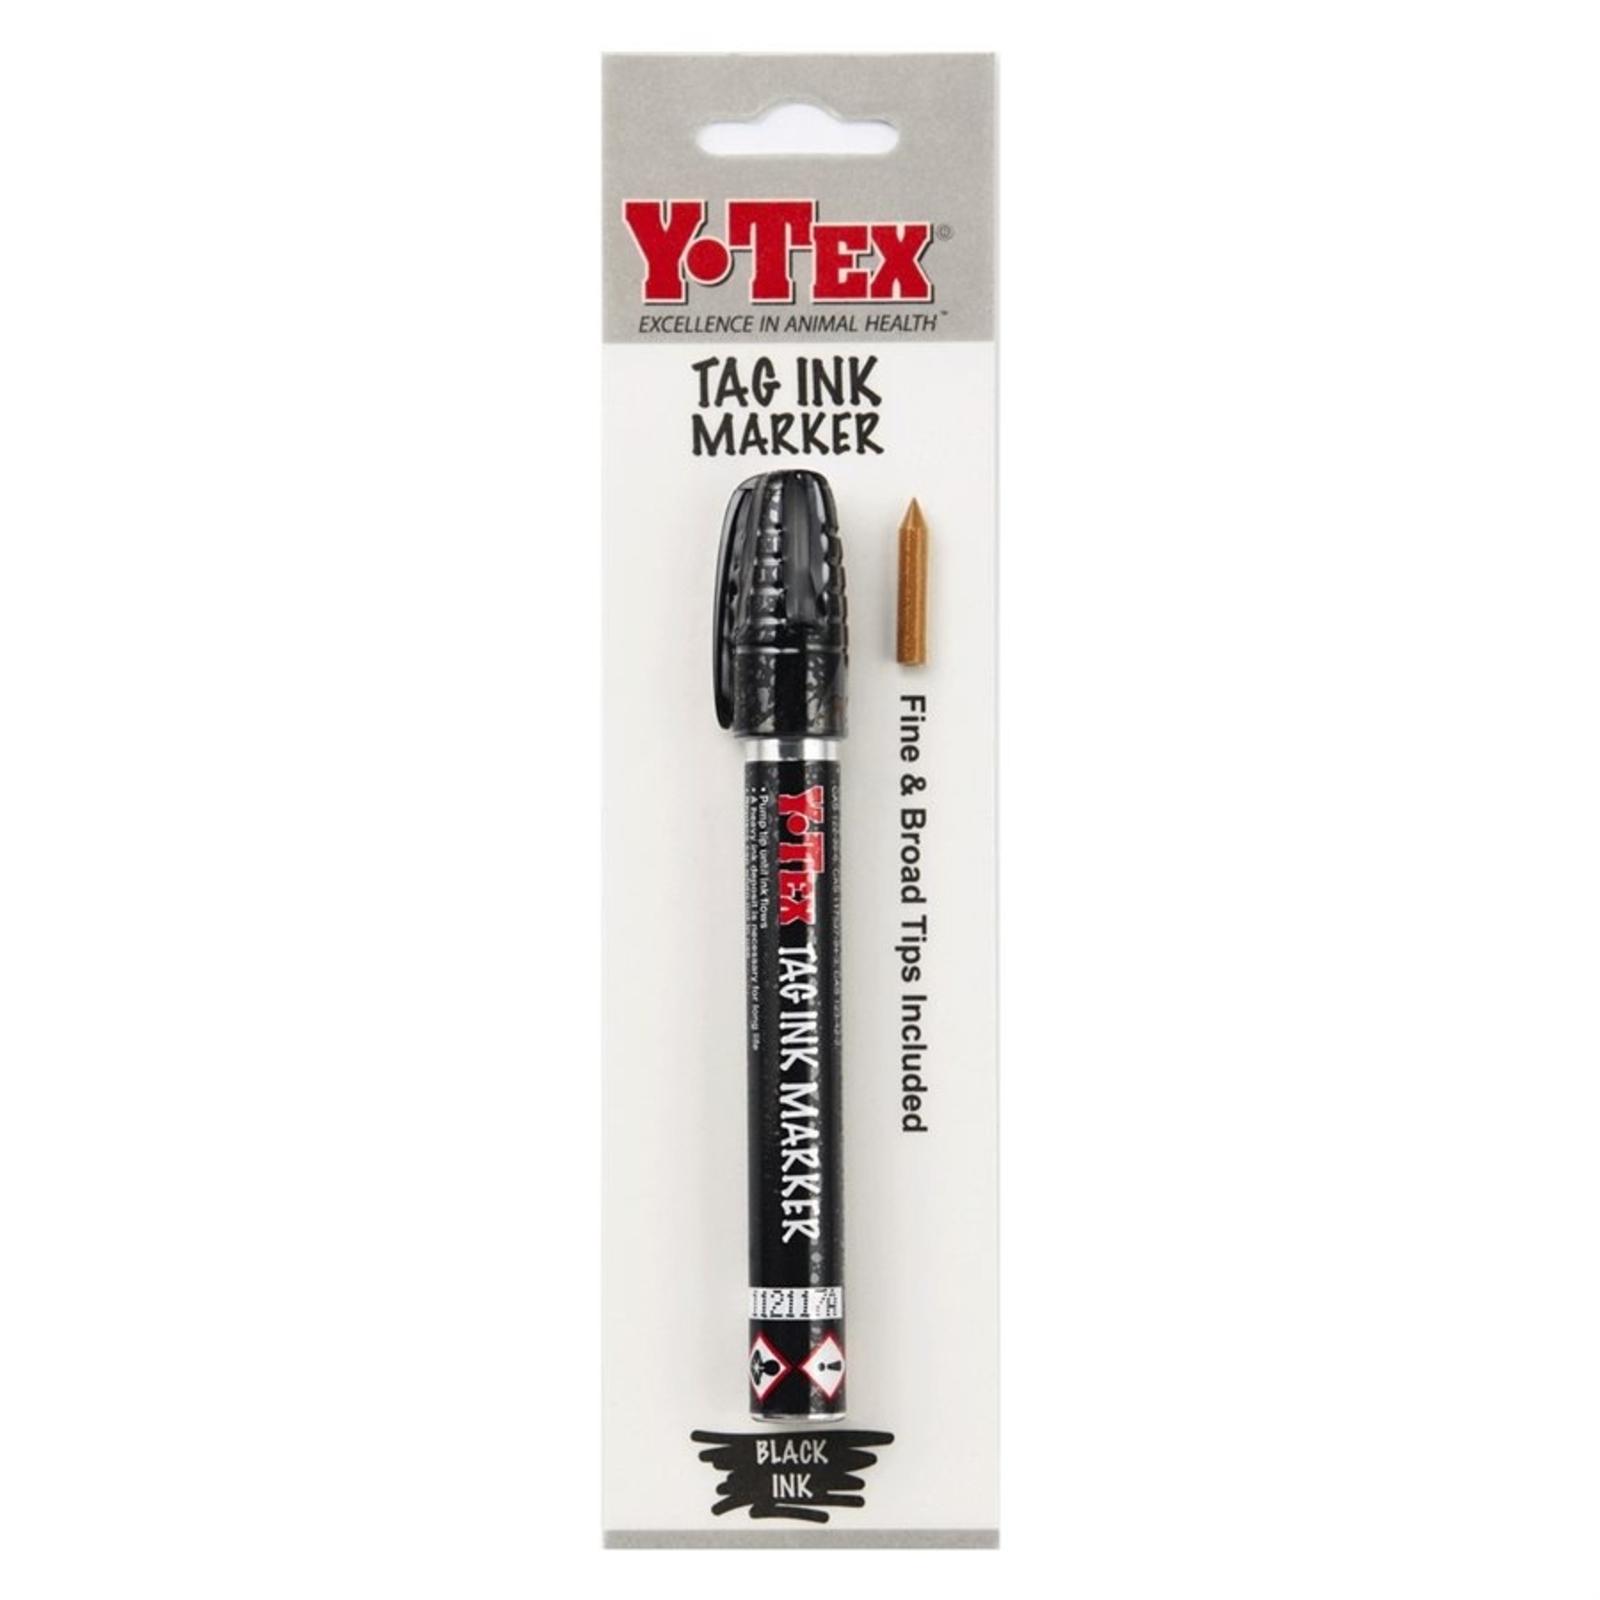 Y-Tex Tag Ink Marker - Black